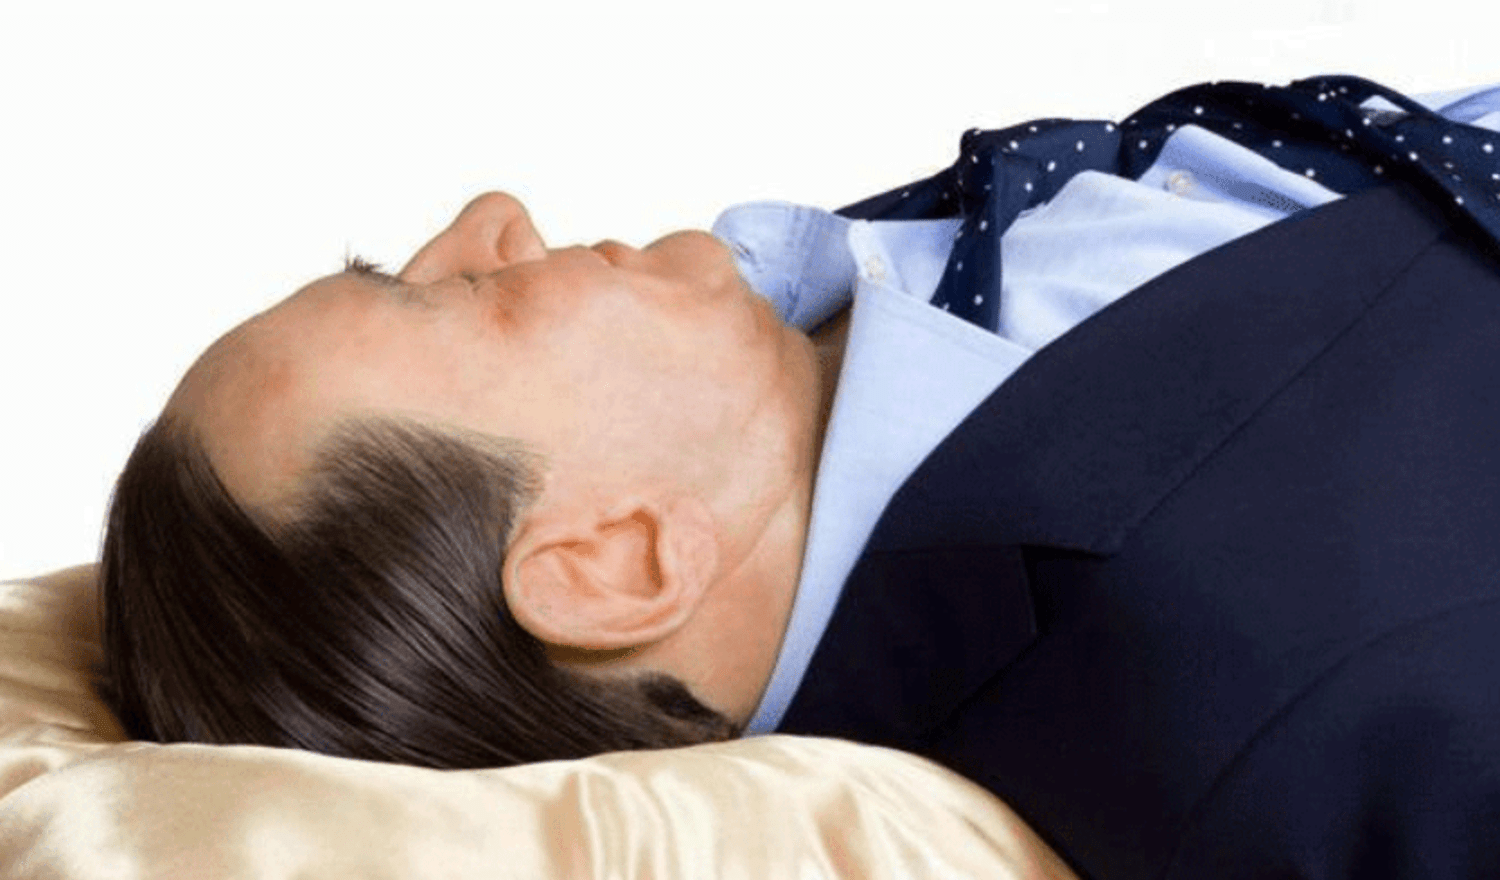 Оторванная голова близкого во сне. Берлускони шуточная картинка мёртвого Берлускони в гробу. Приснился спящий мужчина